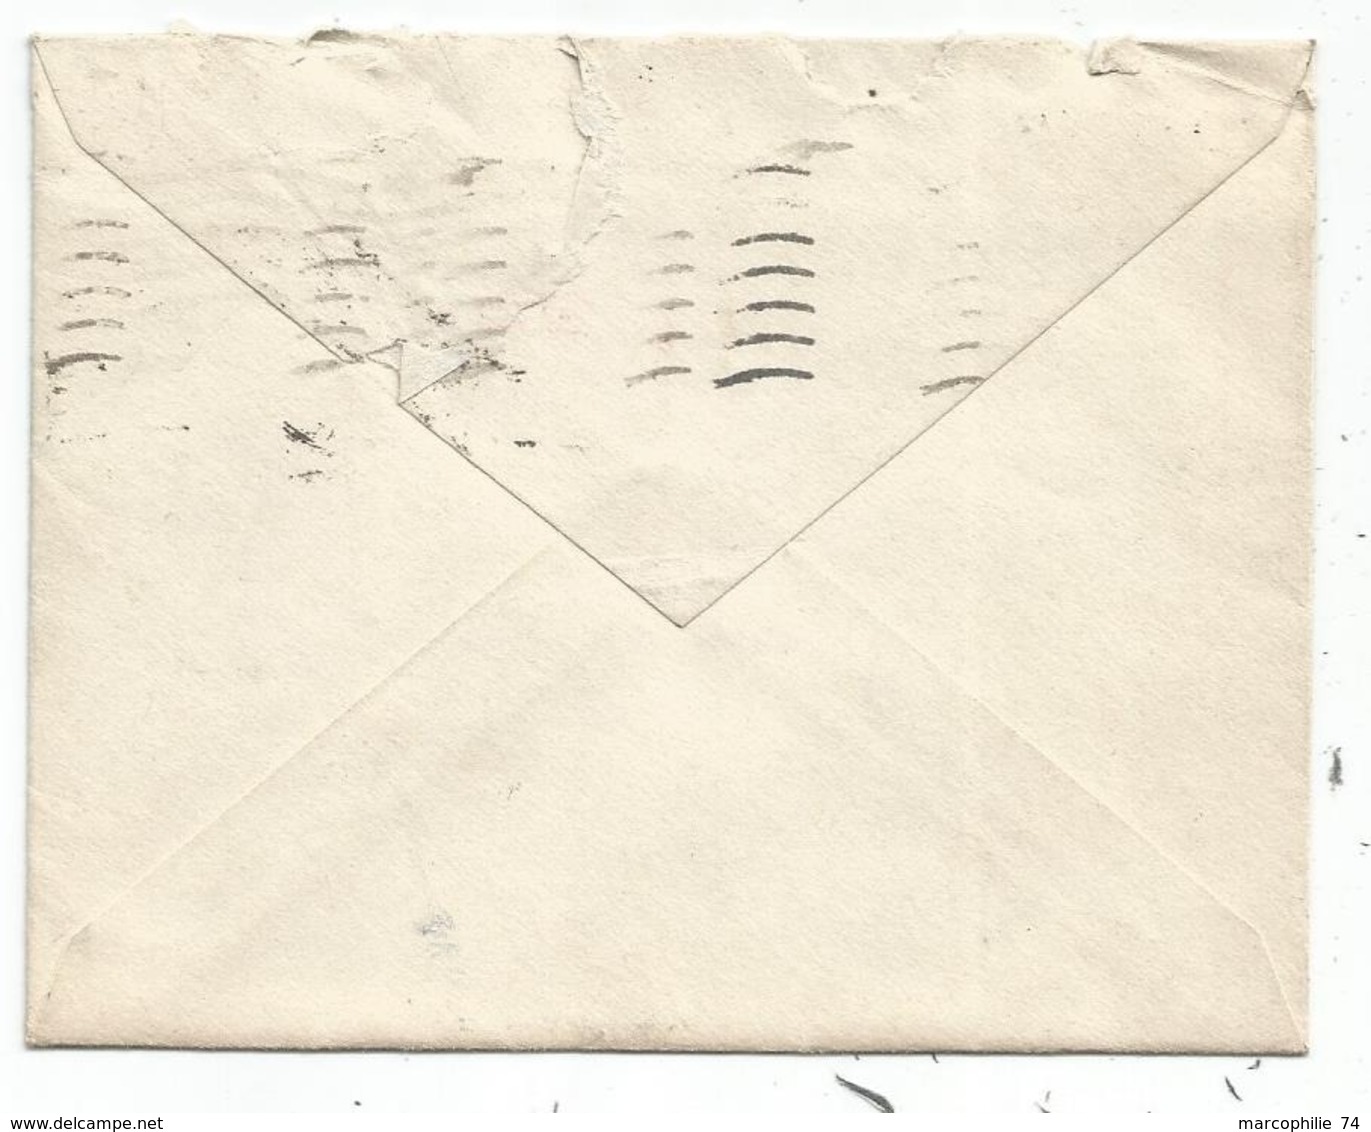 TAXE 2FR+10FR ROANNE LOIRE 1948 LETTRE FM Mal Ouverte En Haut - 1859-1959 Lettres & Documents